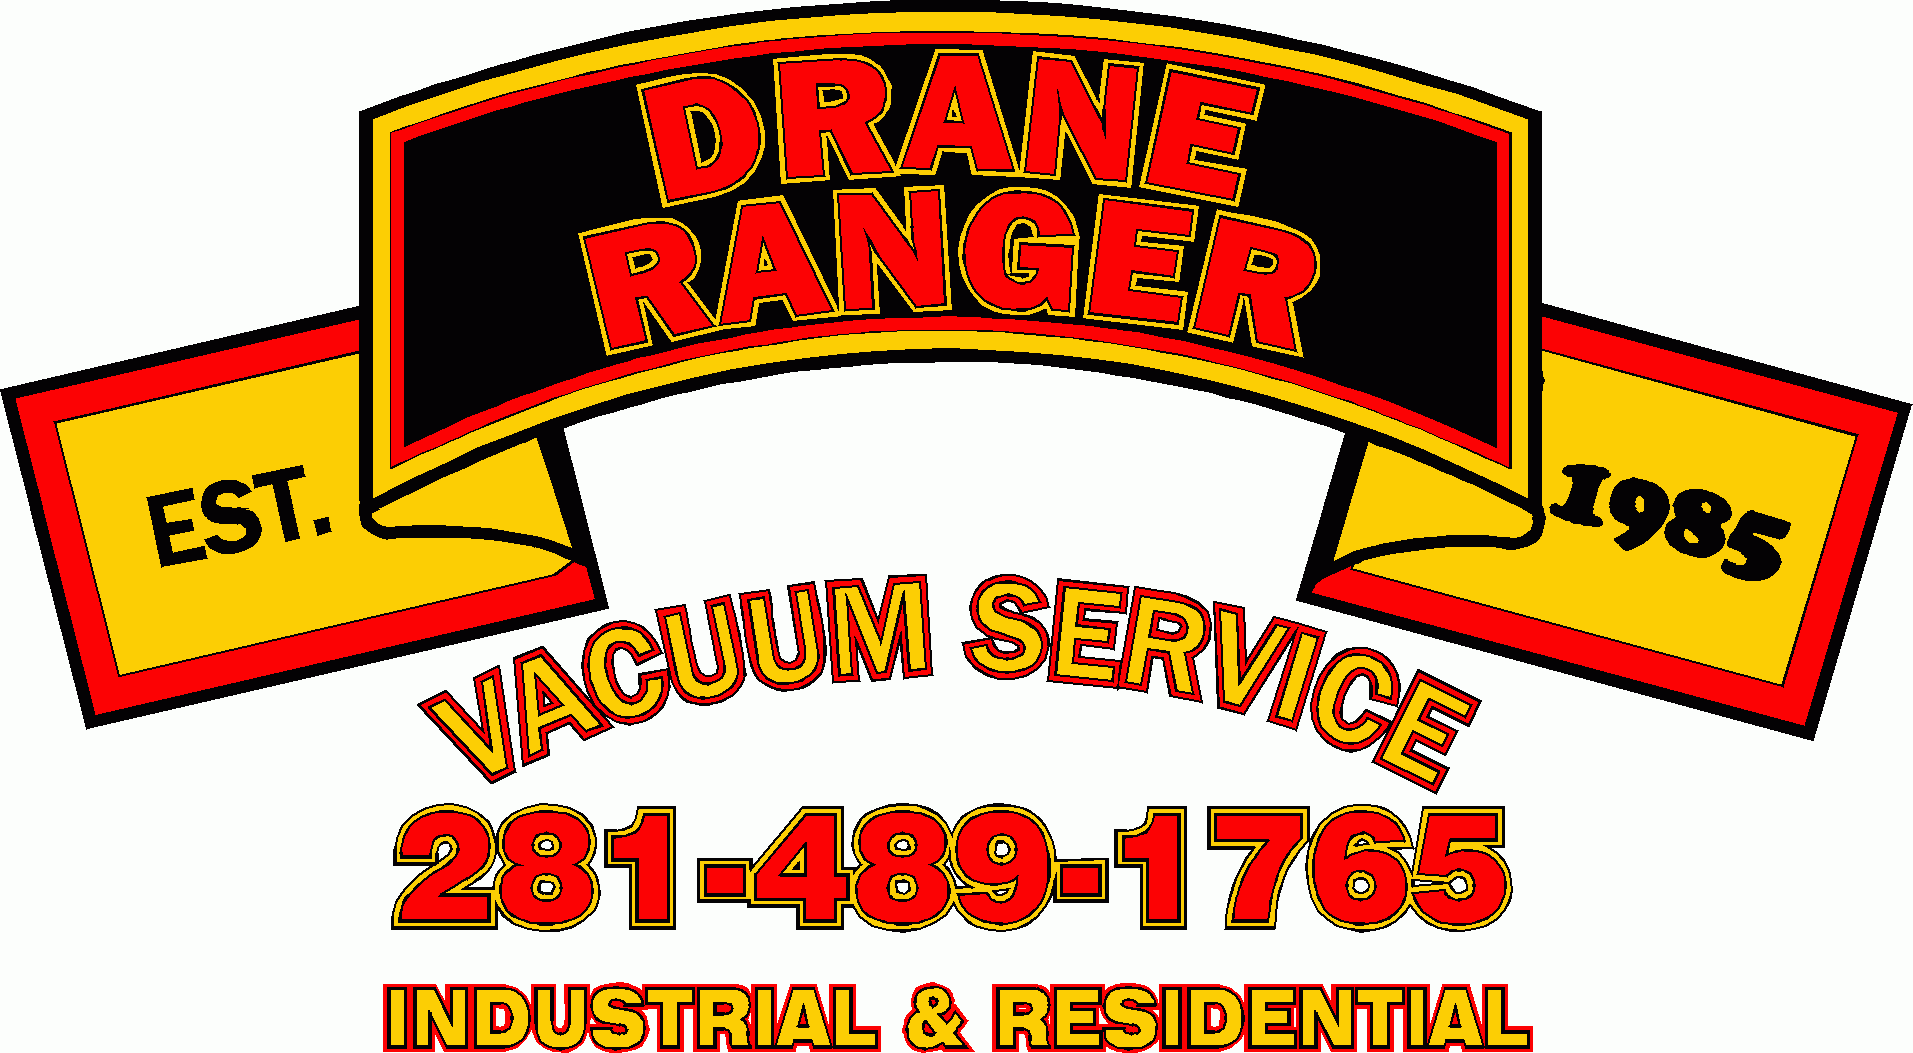 Drane Ranger